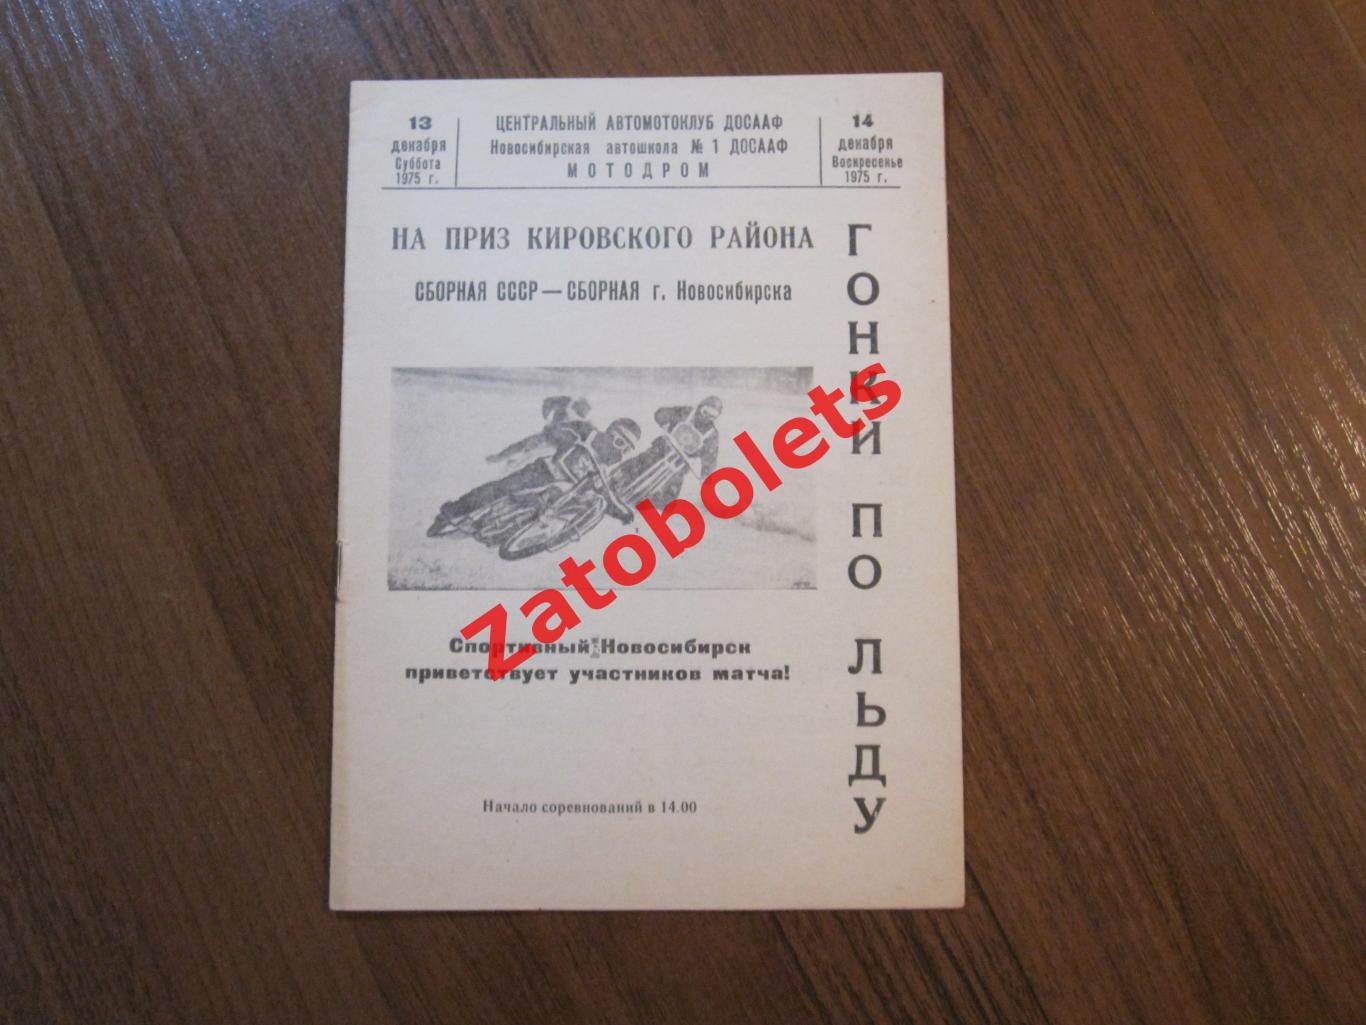 Мотогонки Спидвей сборная СССР - сборная Новосибирска 1975 Приз Кировского район